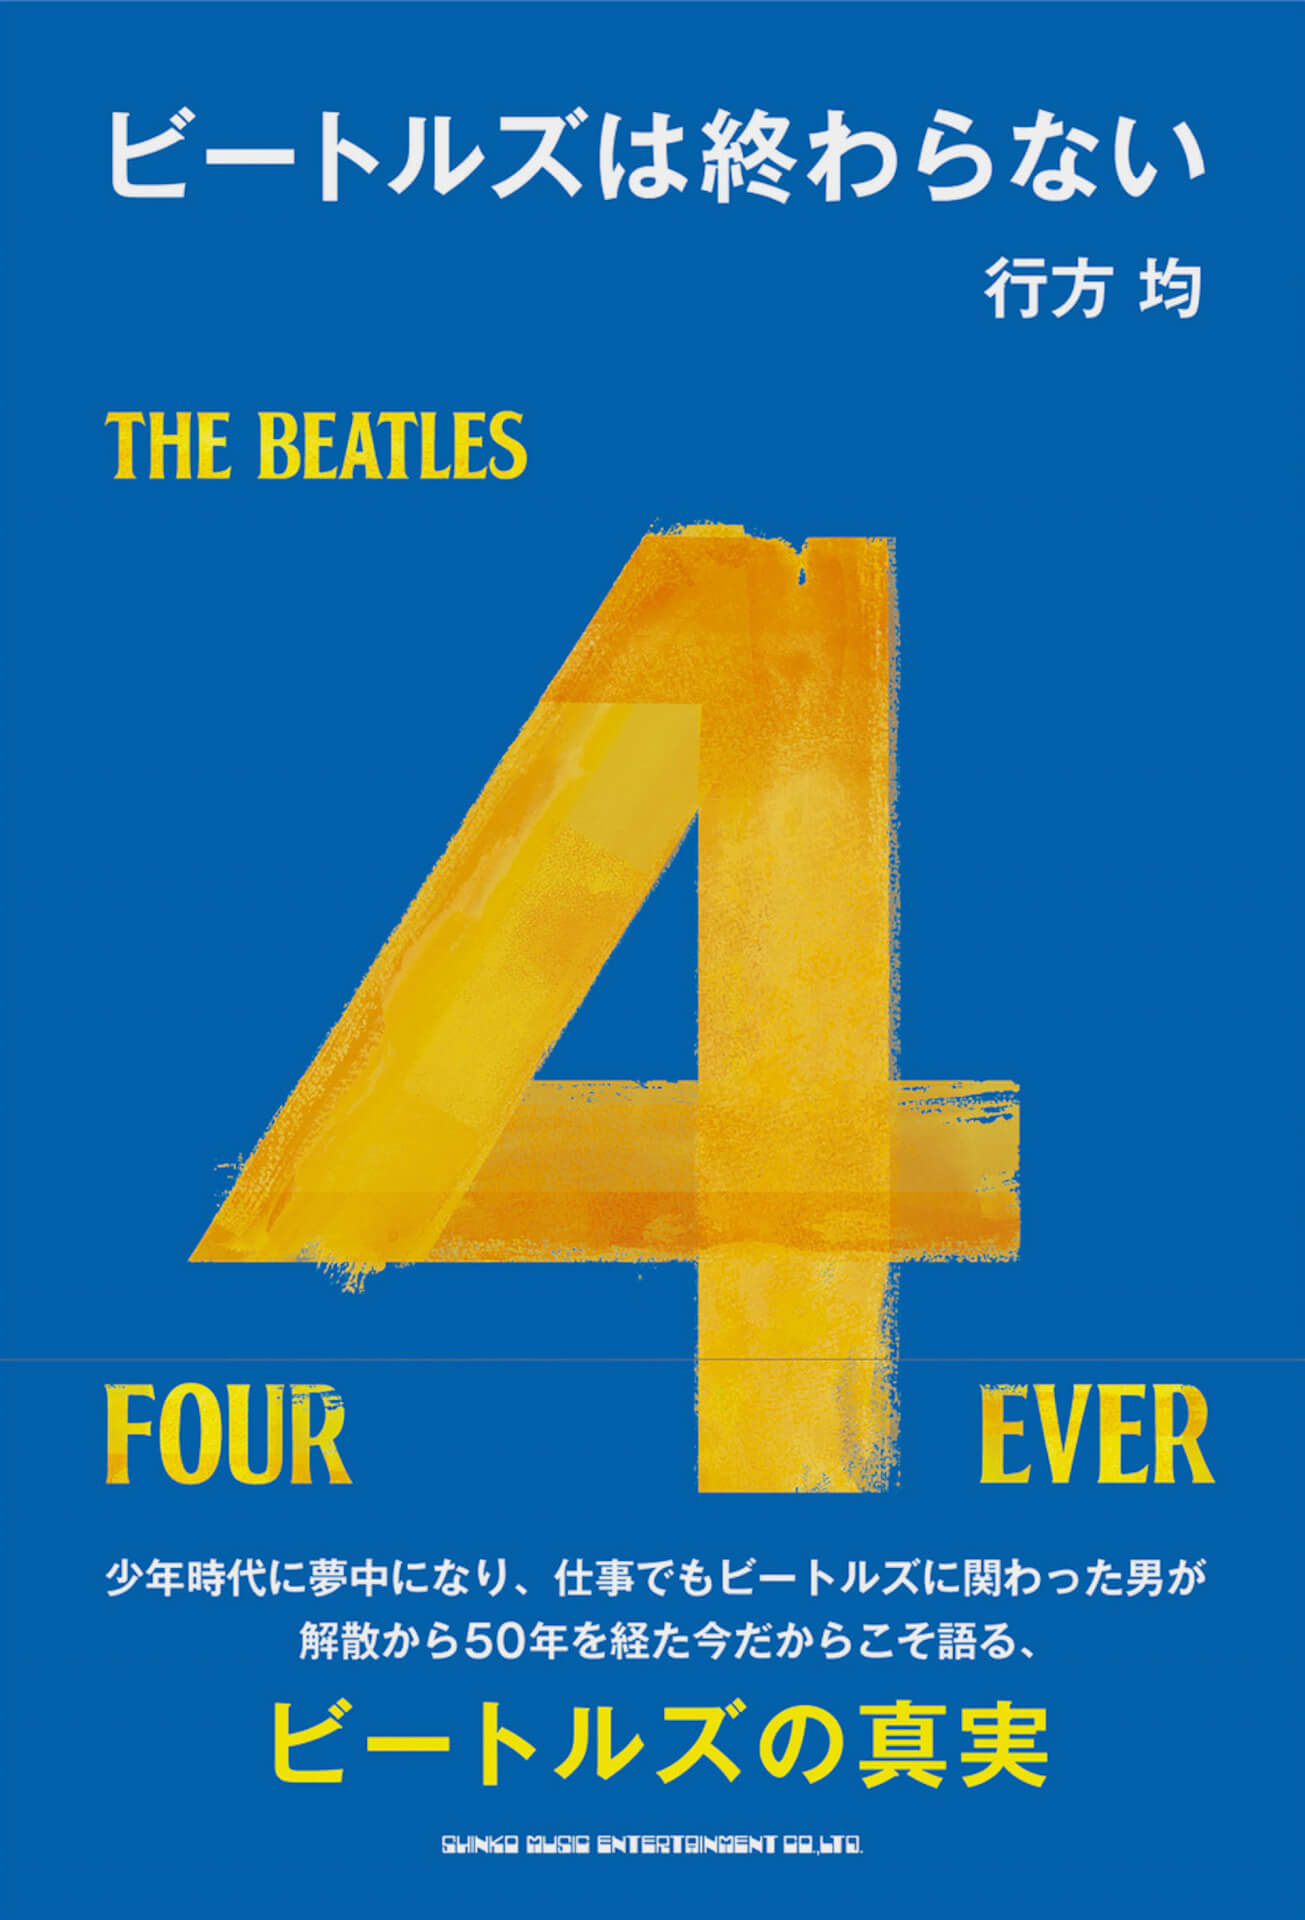 ビートルズの日本での作品リリースを統括した行方均著『ビートルズは終わらない』が発売決定！連載や対談が収録 ac200513_beatles_01